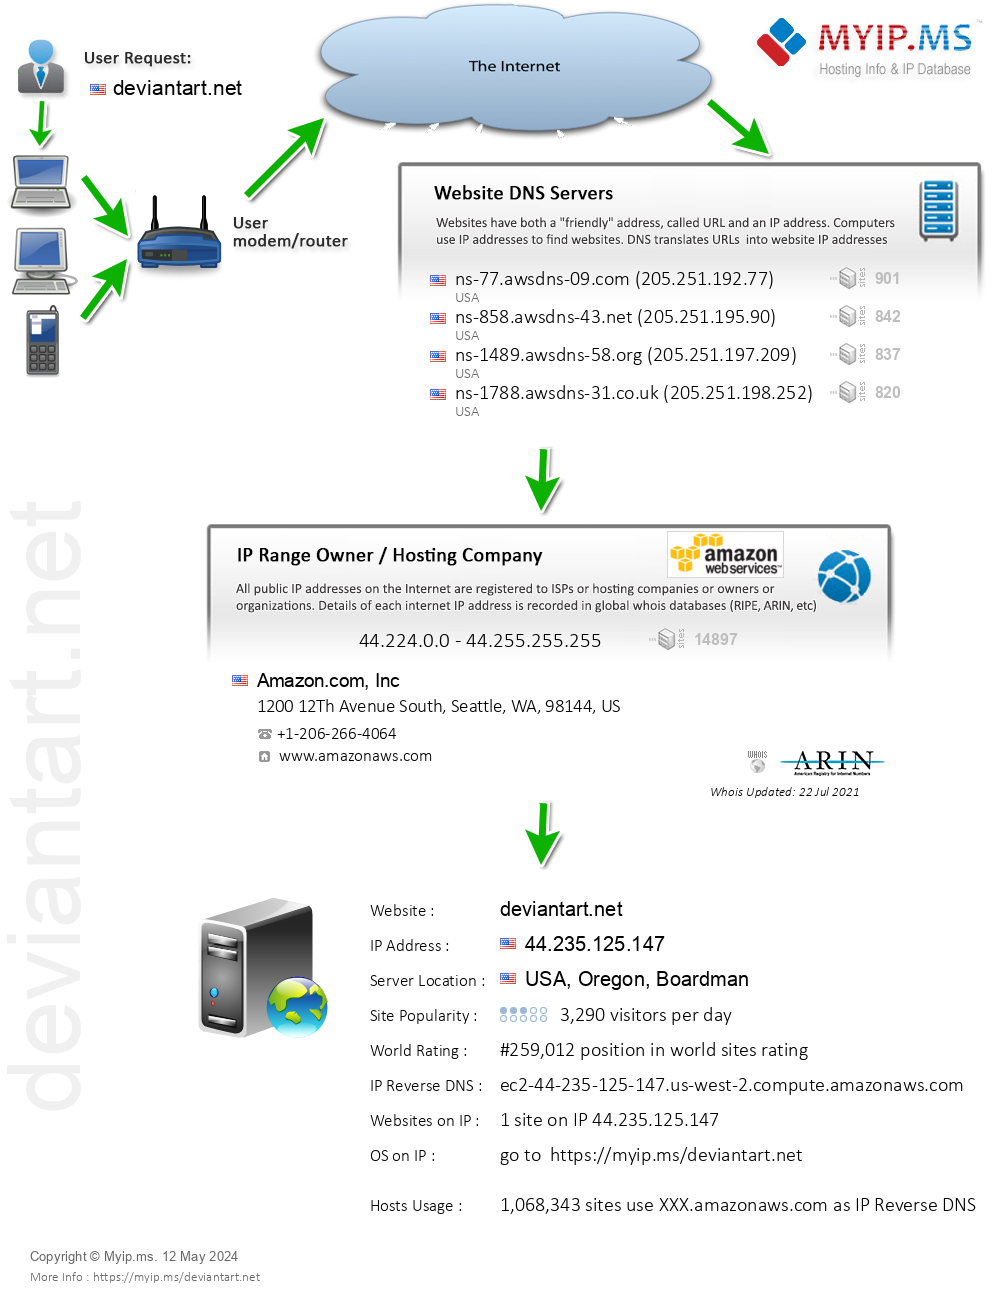 Deviantart.net - Website Hosting Visual IP Diagram